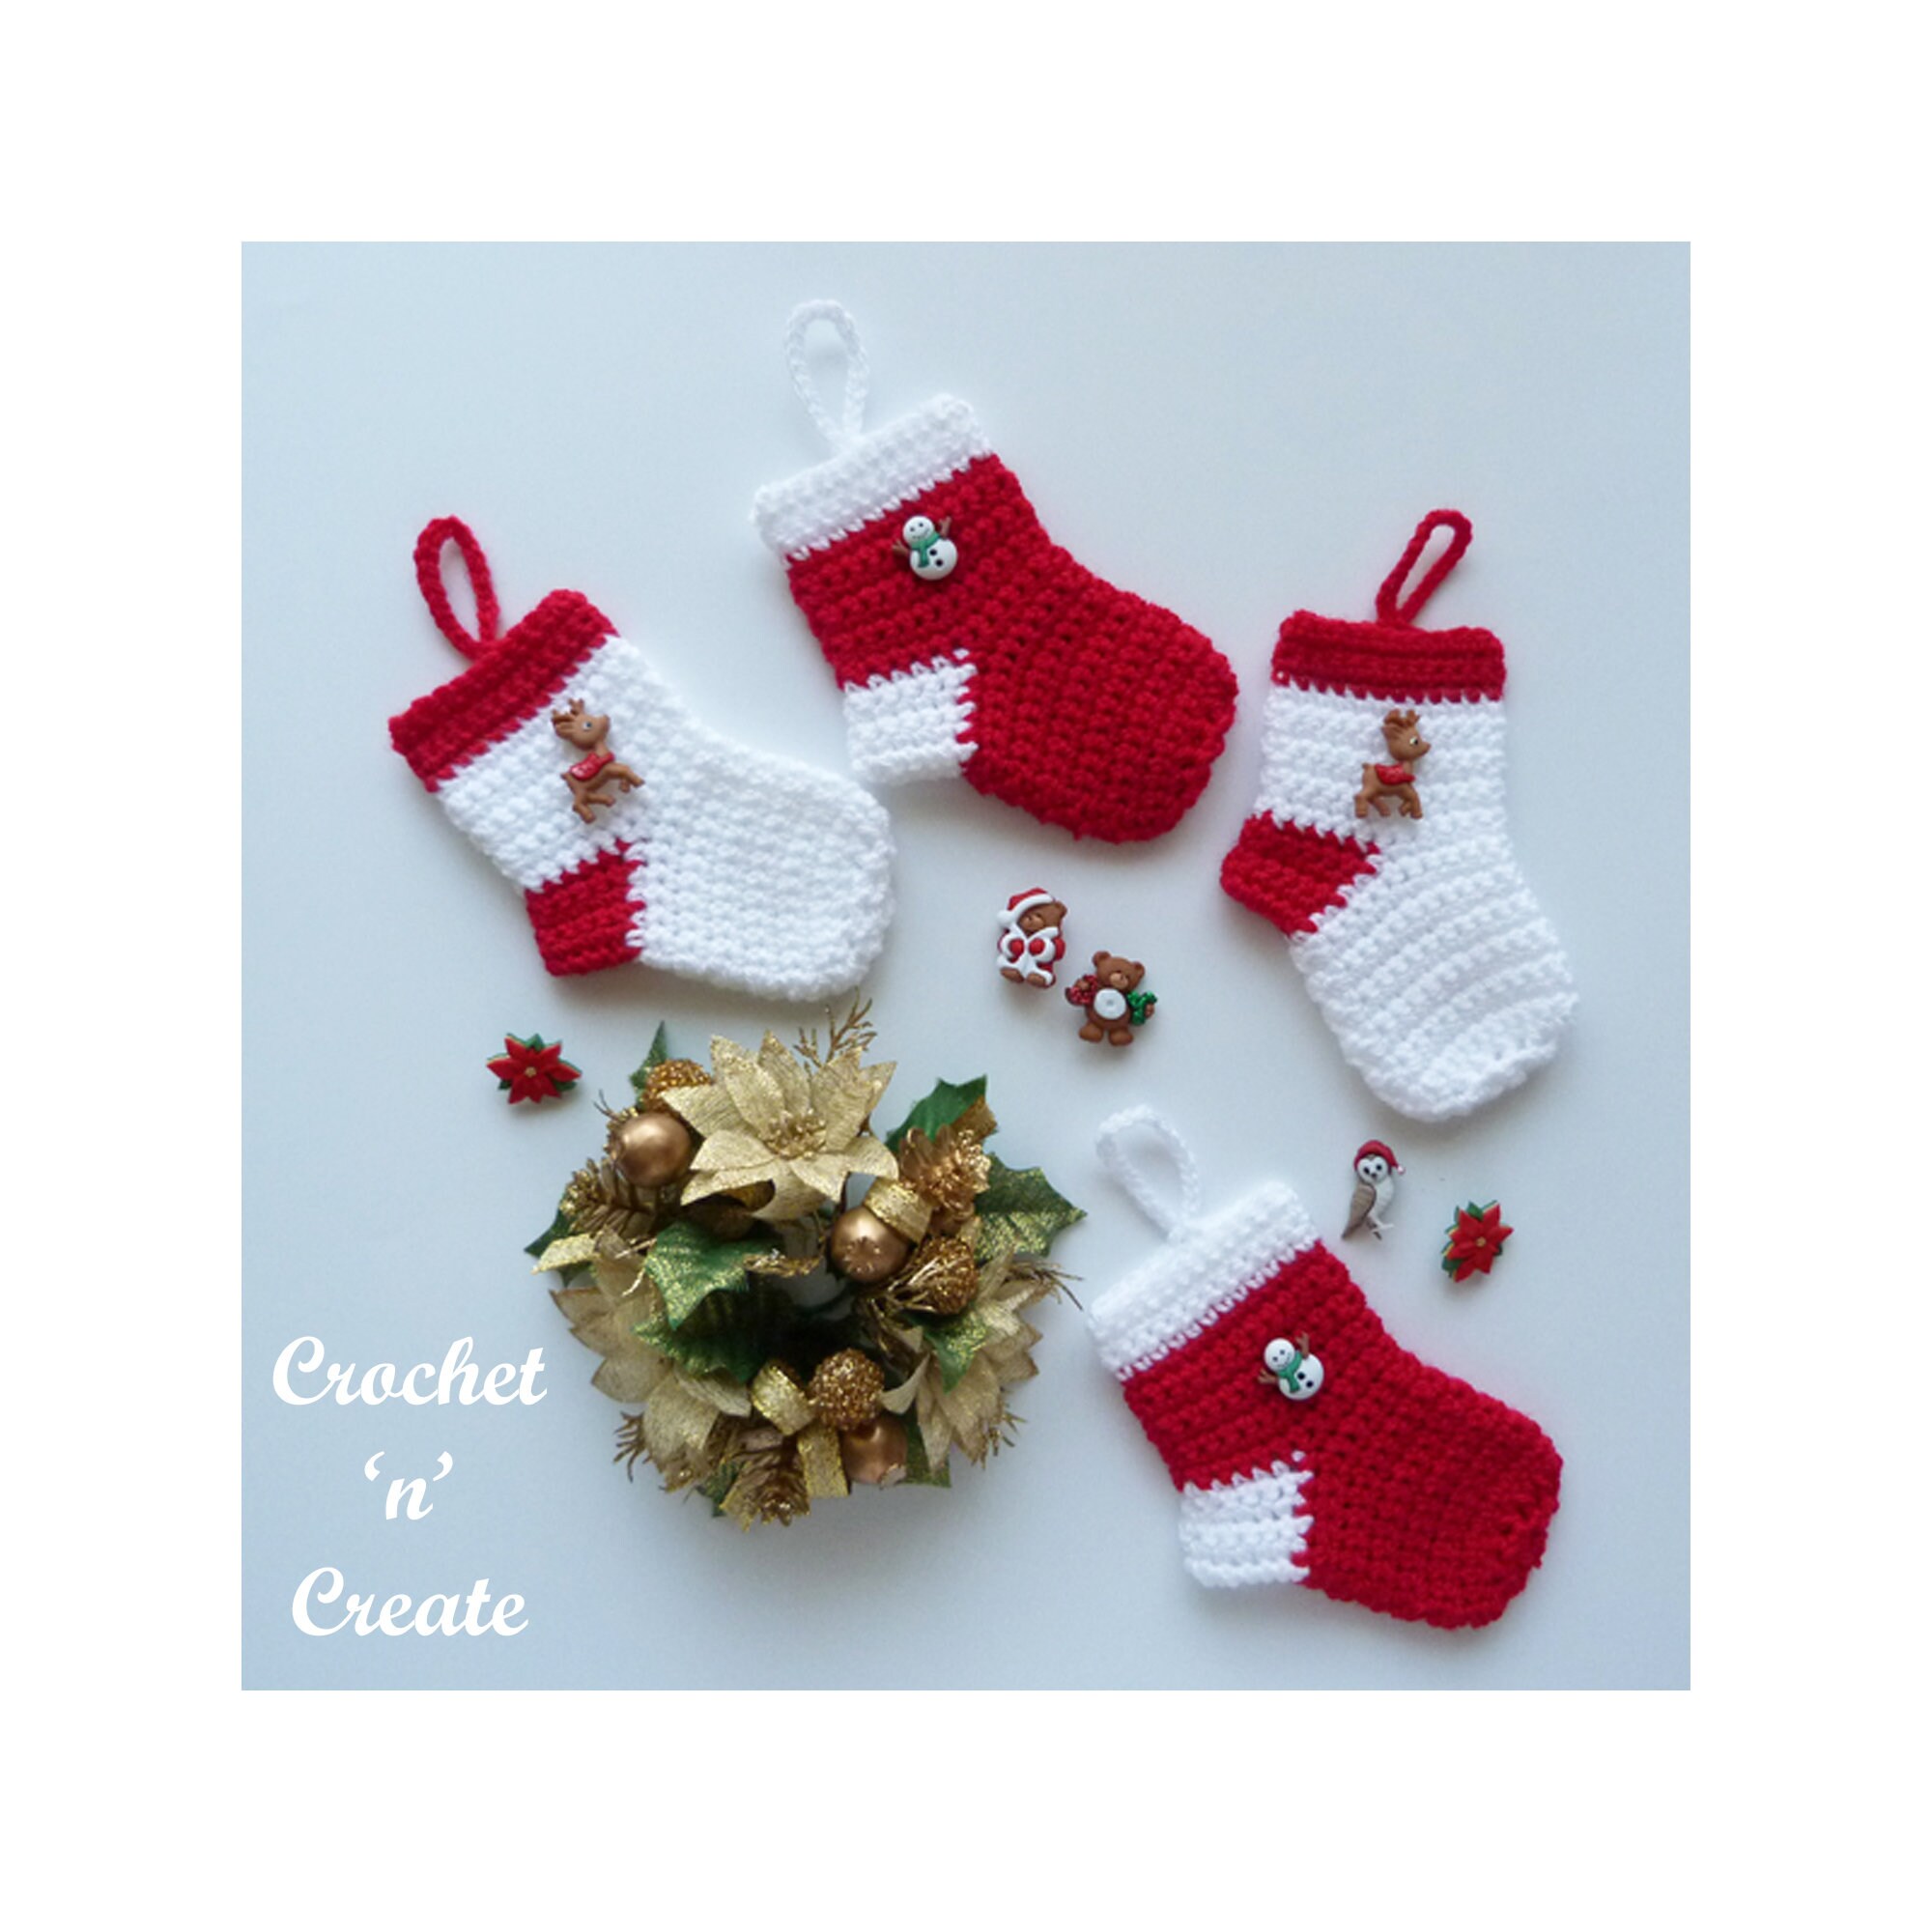 Crochet Christmas Stocking Pattern, Puff Stitch Stocking Pattern